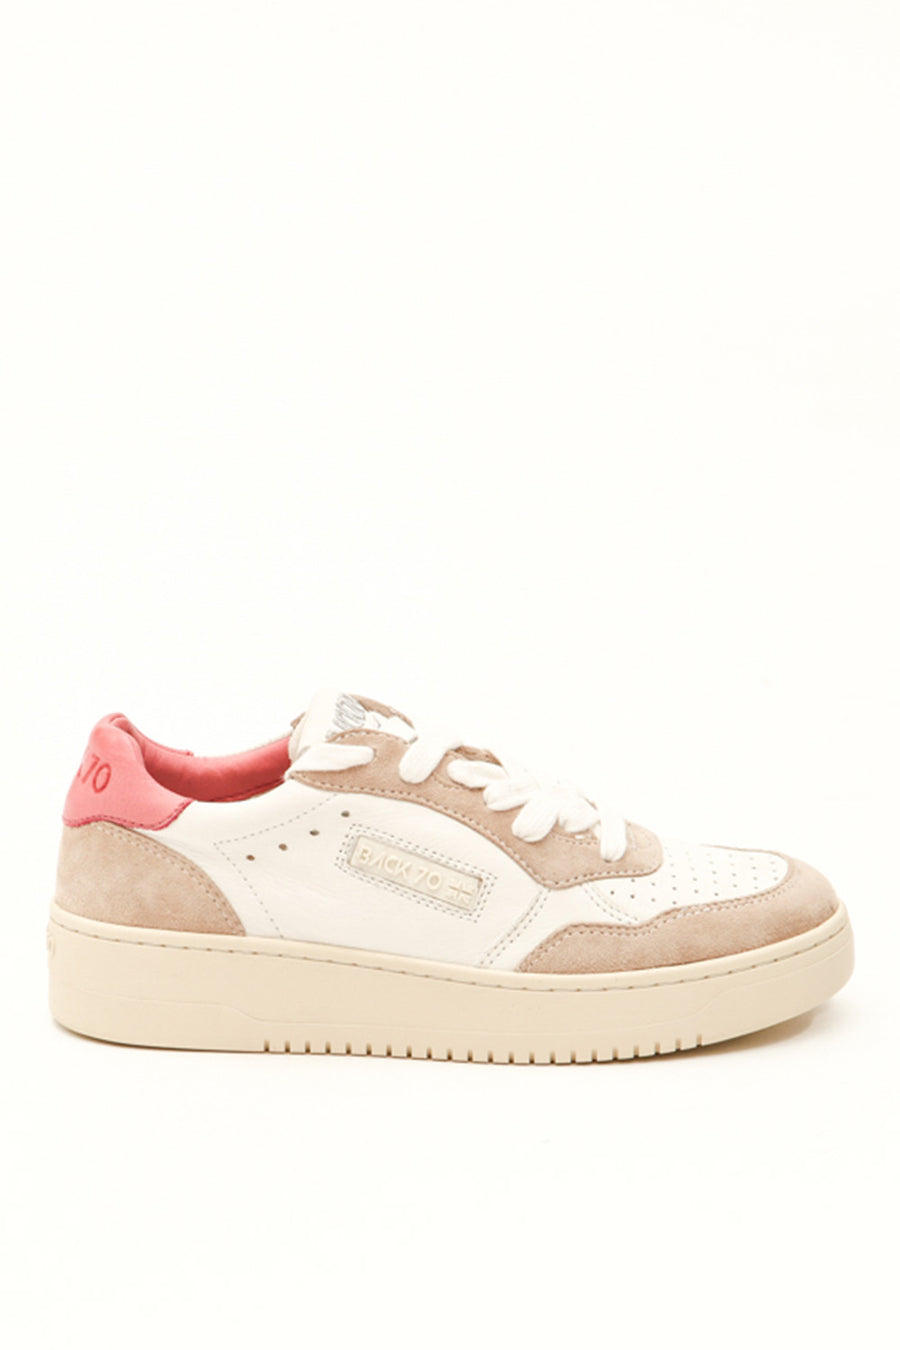 Sneakers Back70 da donna in pelle e camoscio bianca e rosa